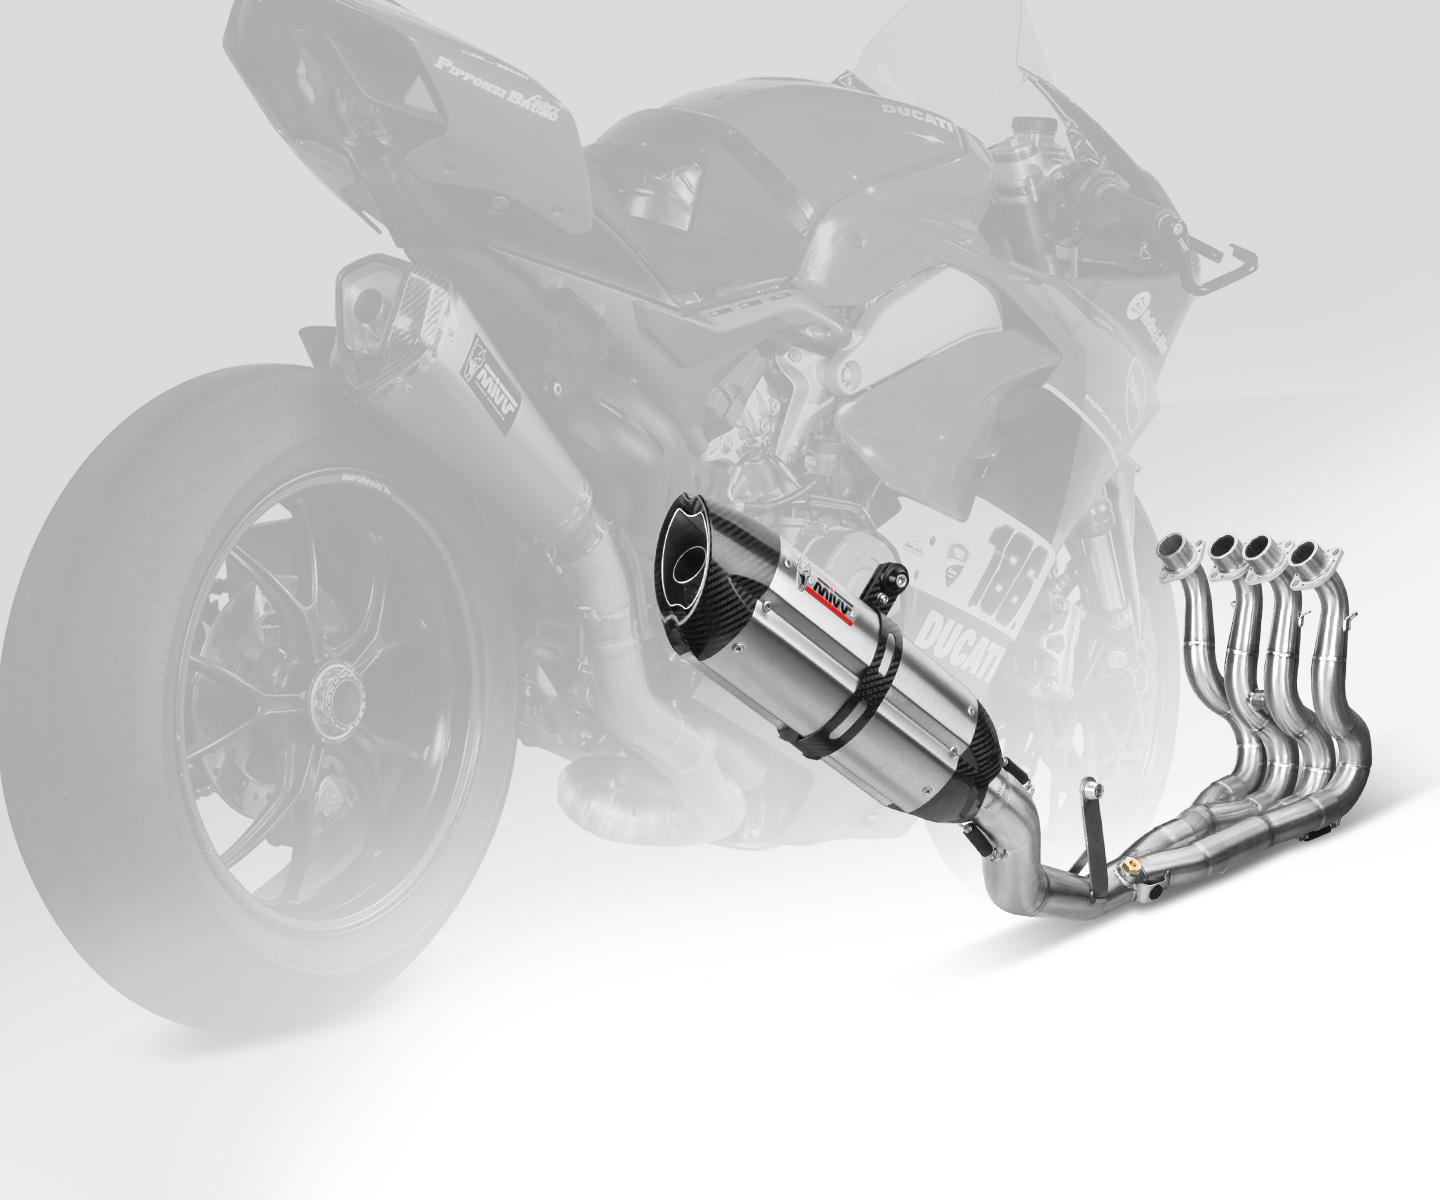 Distribución en exclusiva de los sistemas de admisión de aire para motocicleta con la tecnología más utlizada en MotoGP.